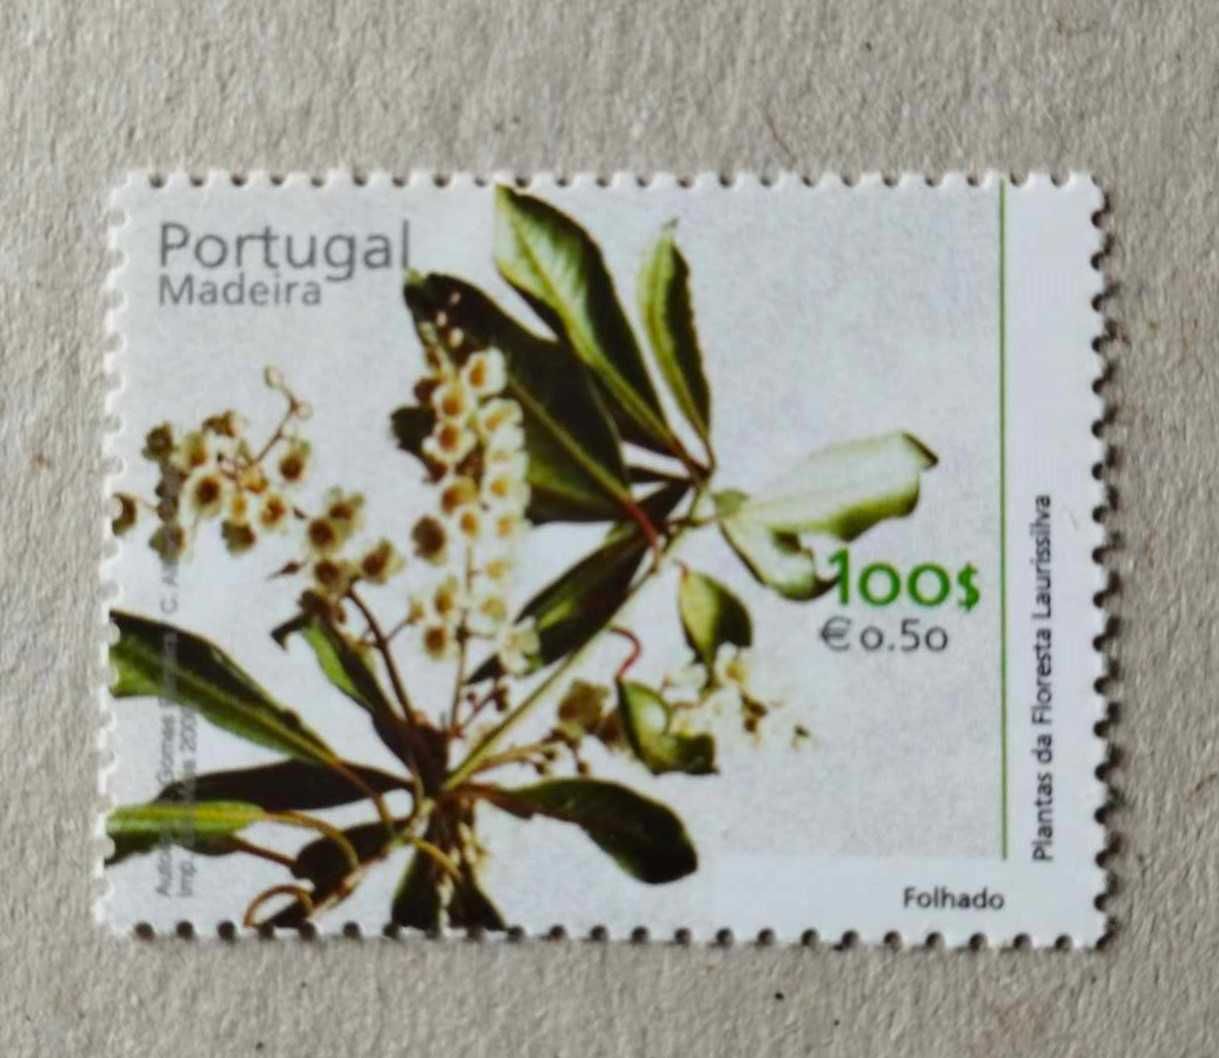 Série nº 2711/16 – Plantas da Floresta Laurissilva da Madeira 2000